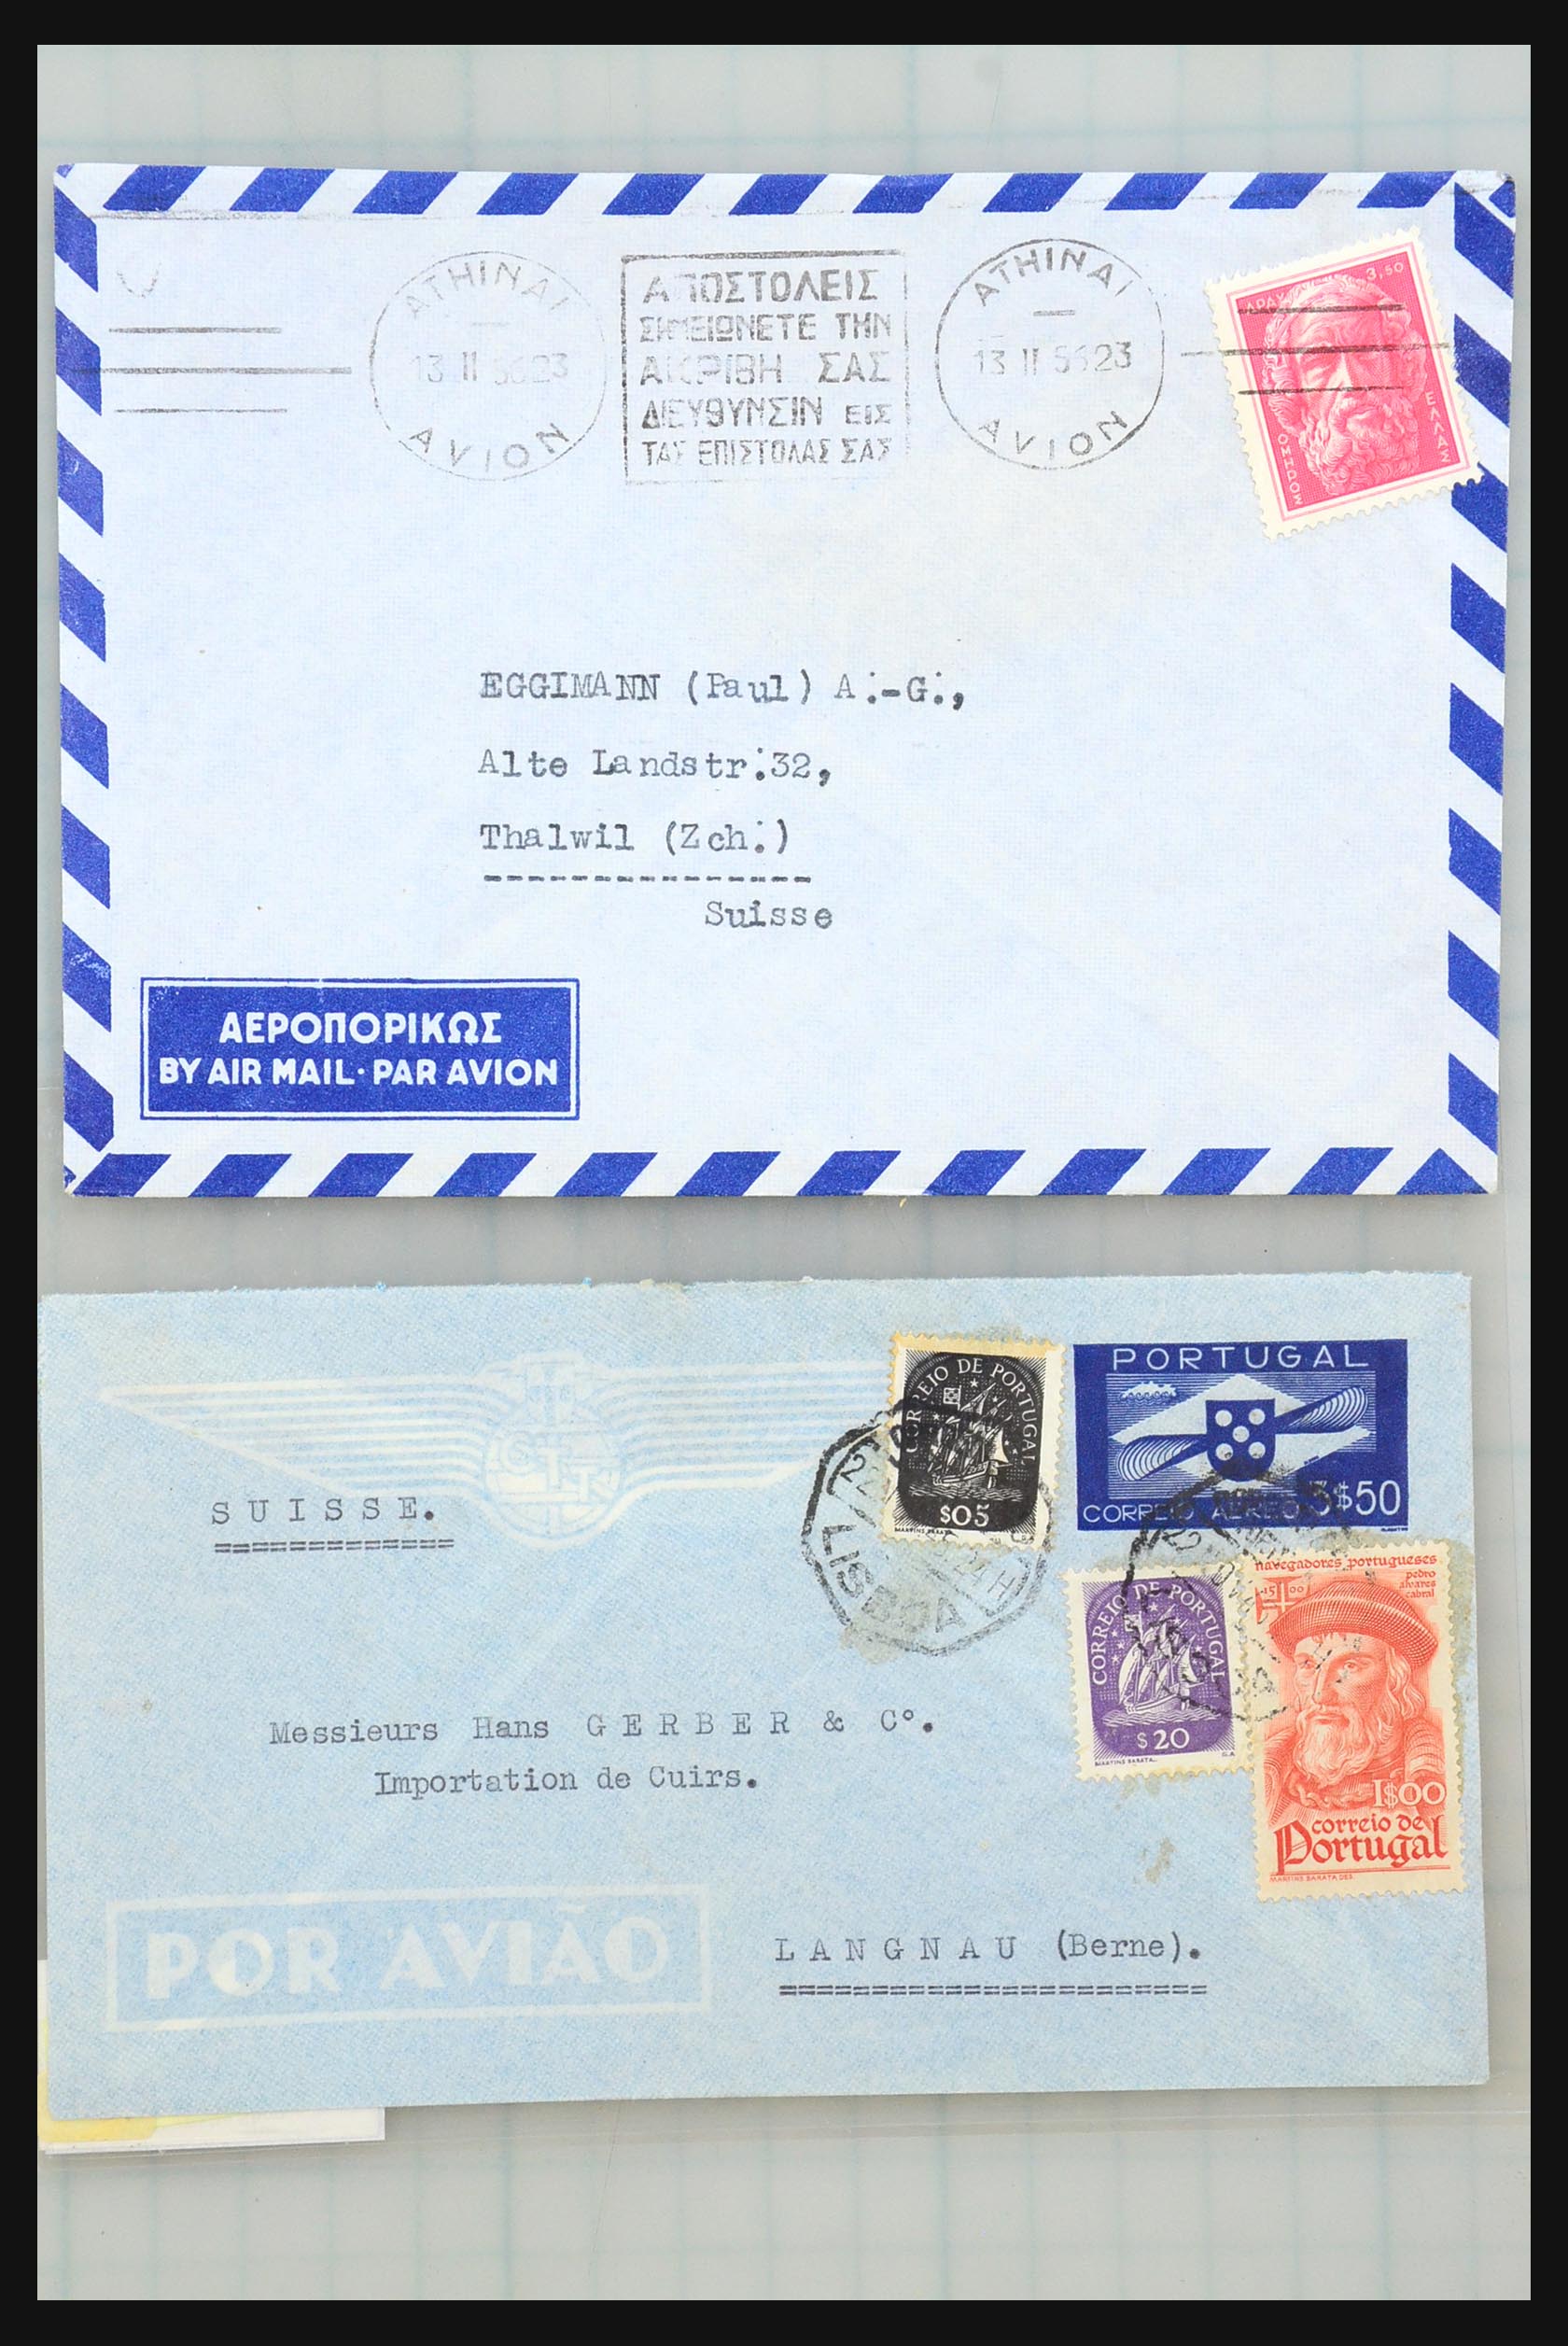 31358 118 - 31358 Portugal/Luxemburg/Griekenland brieven 1880-1960.